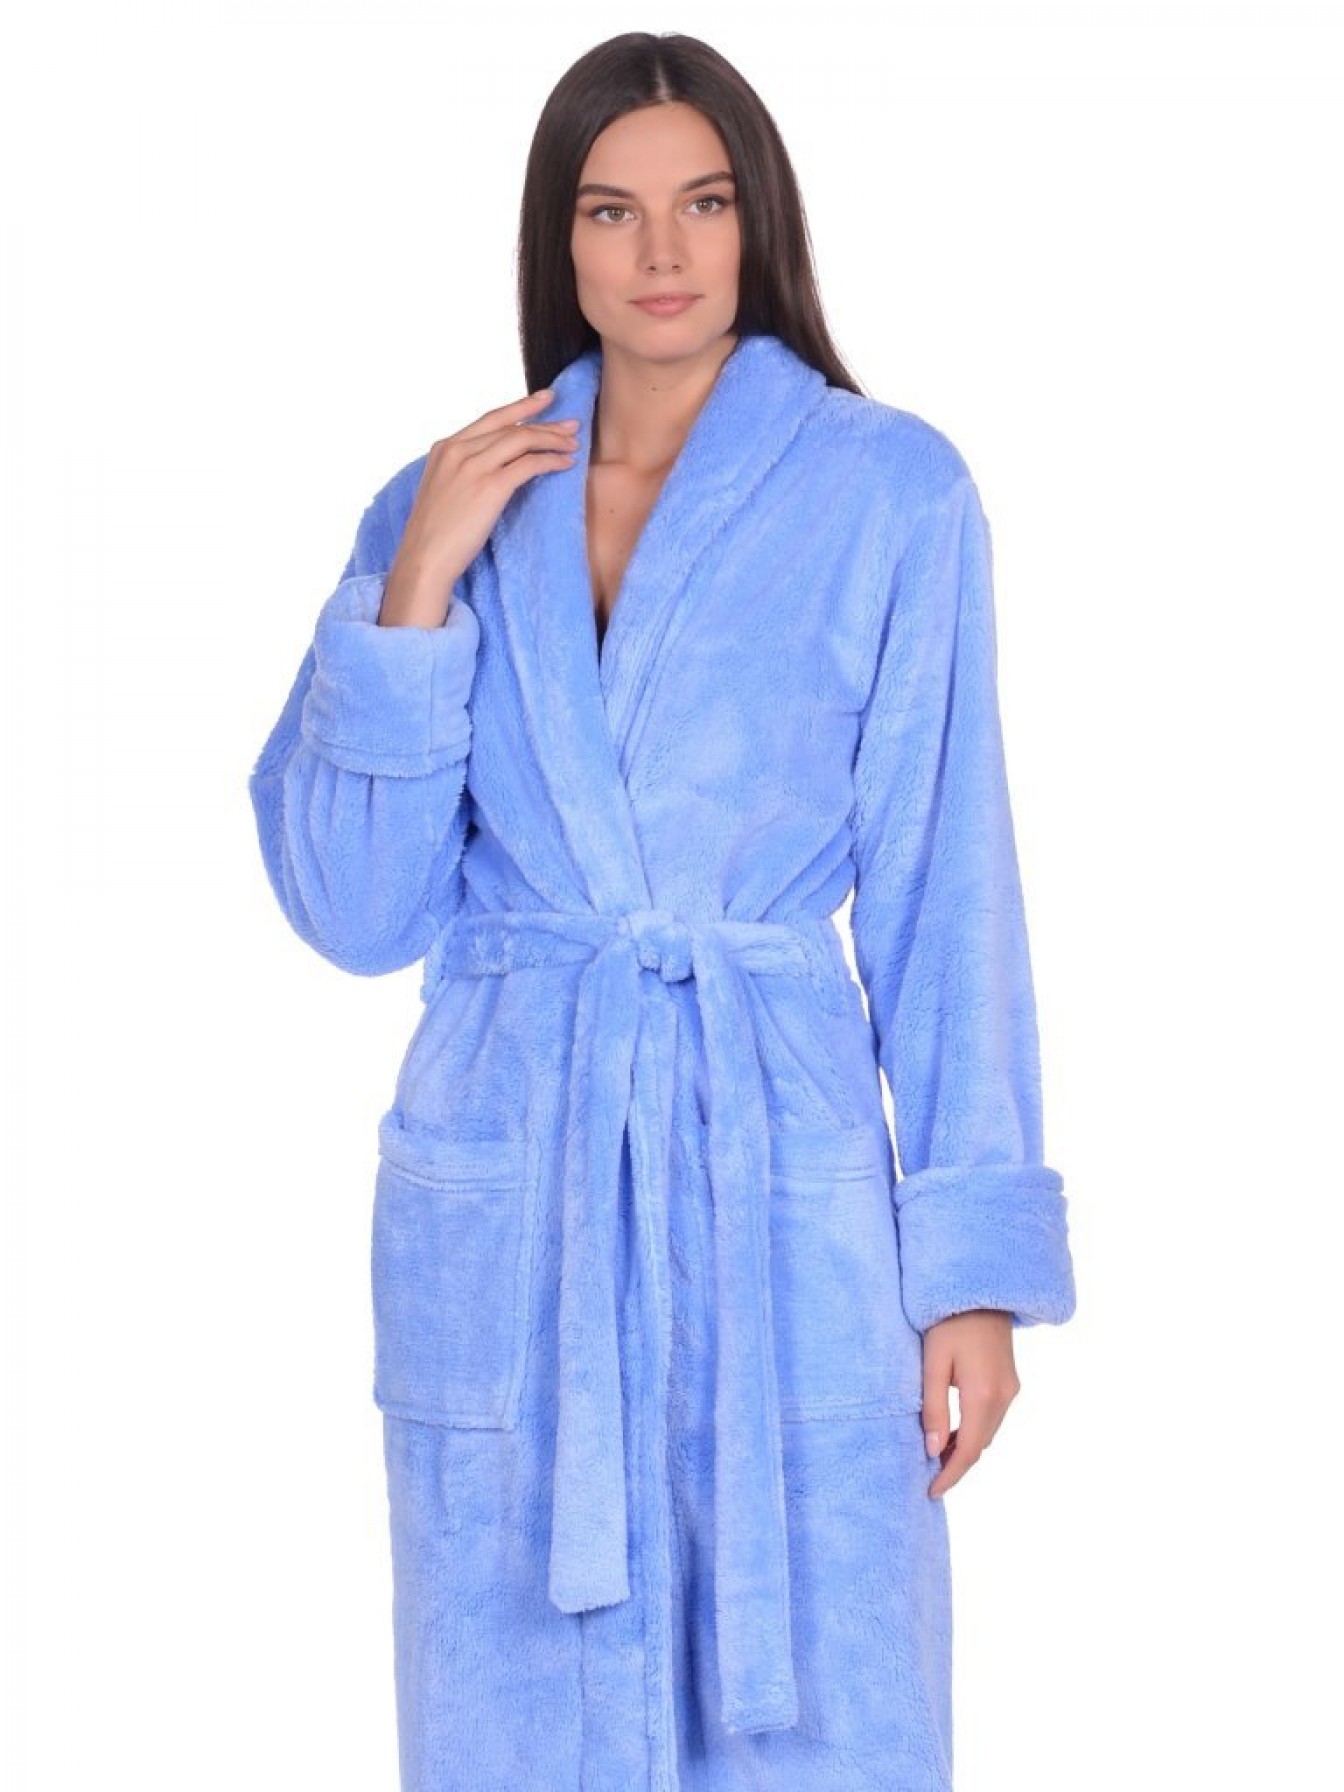 Купить удлиненный пушистый халат из велсофта Tendre (PM France 745)- голубой